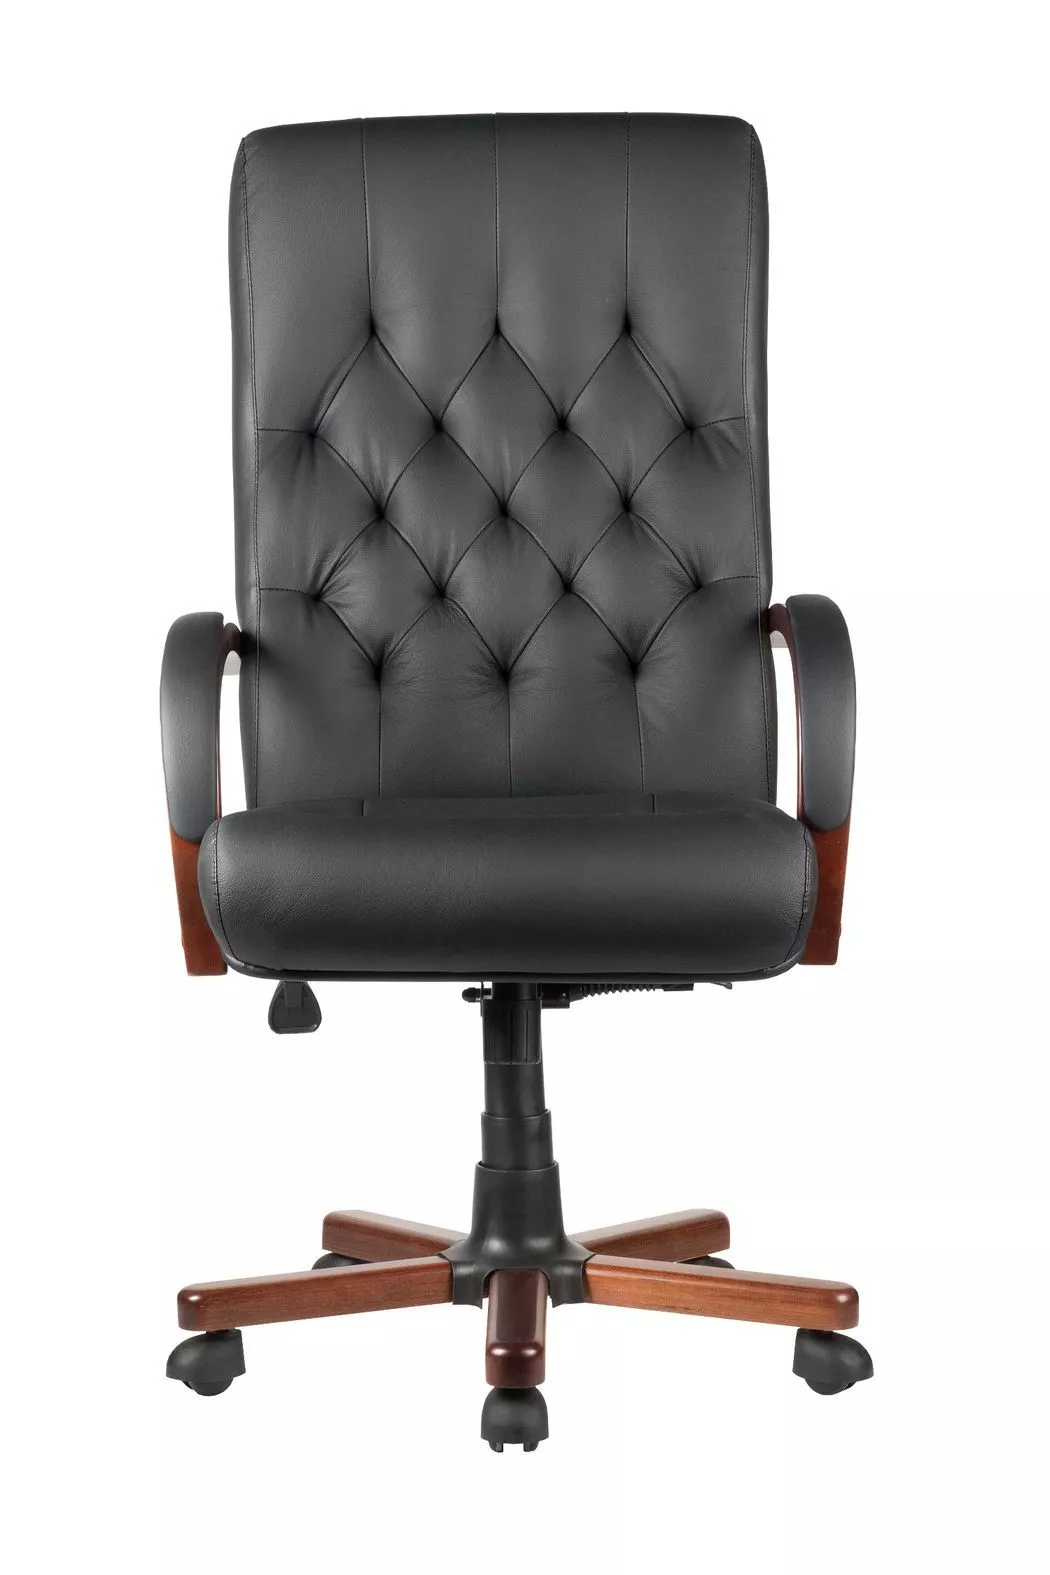 Кресло руководителя Riva Chair WOOD M 175 A черный